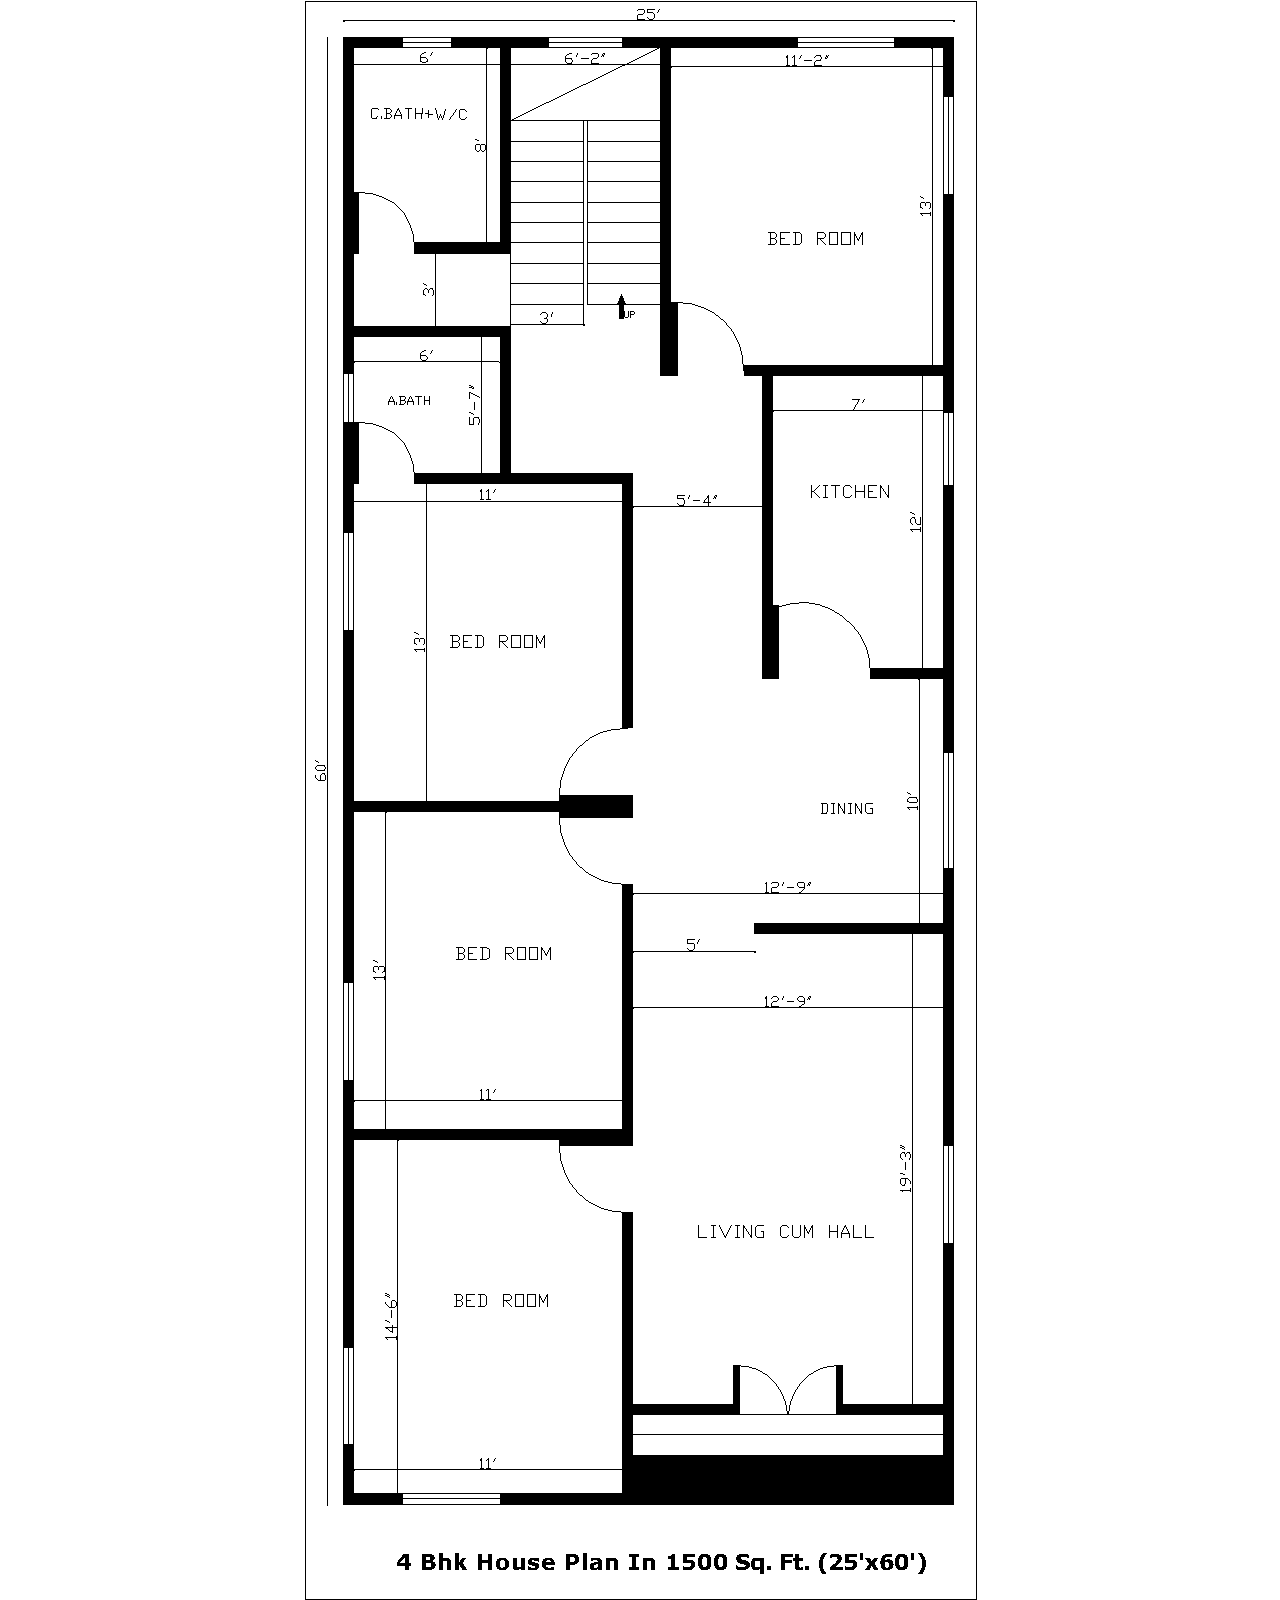 4 Bhk House Plan In 1500 Sq. Ft. (25'x60') | 4 Bhk Gharka Naksha In 1500 Sq. Ft. (25'x60')